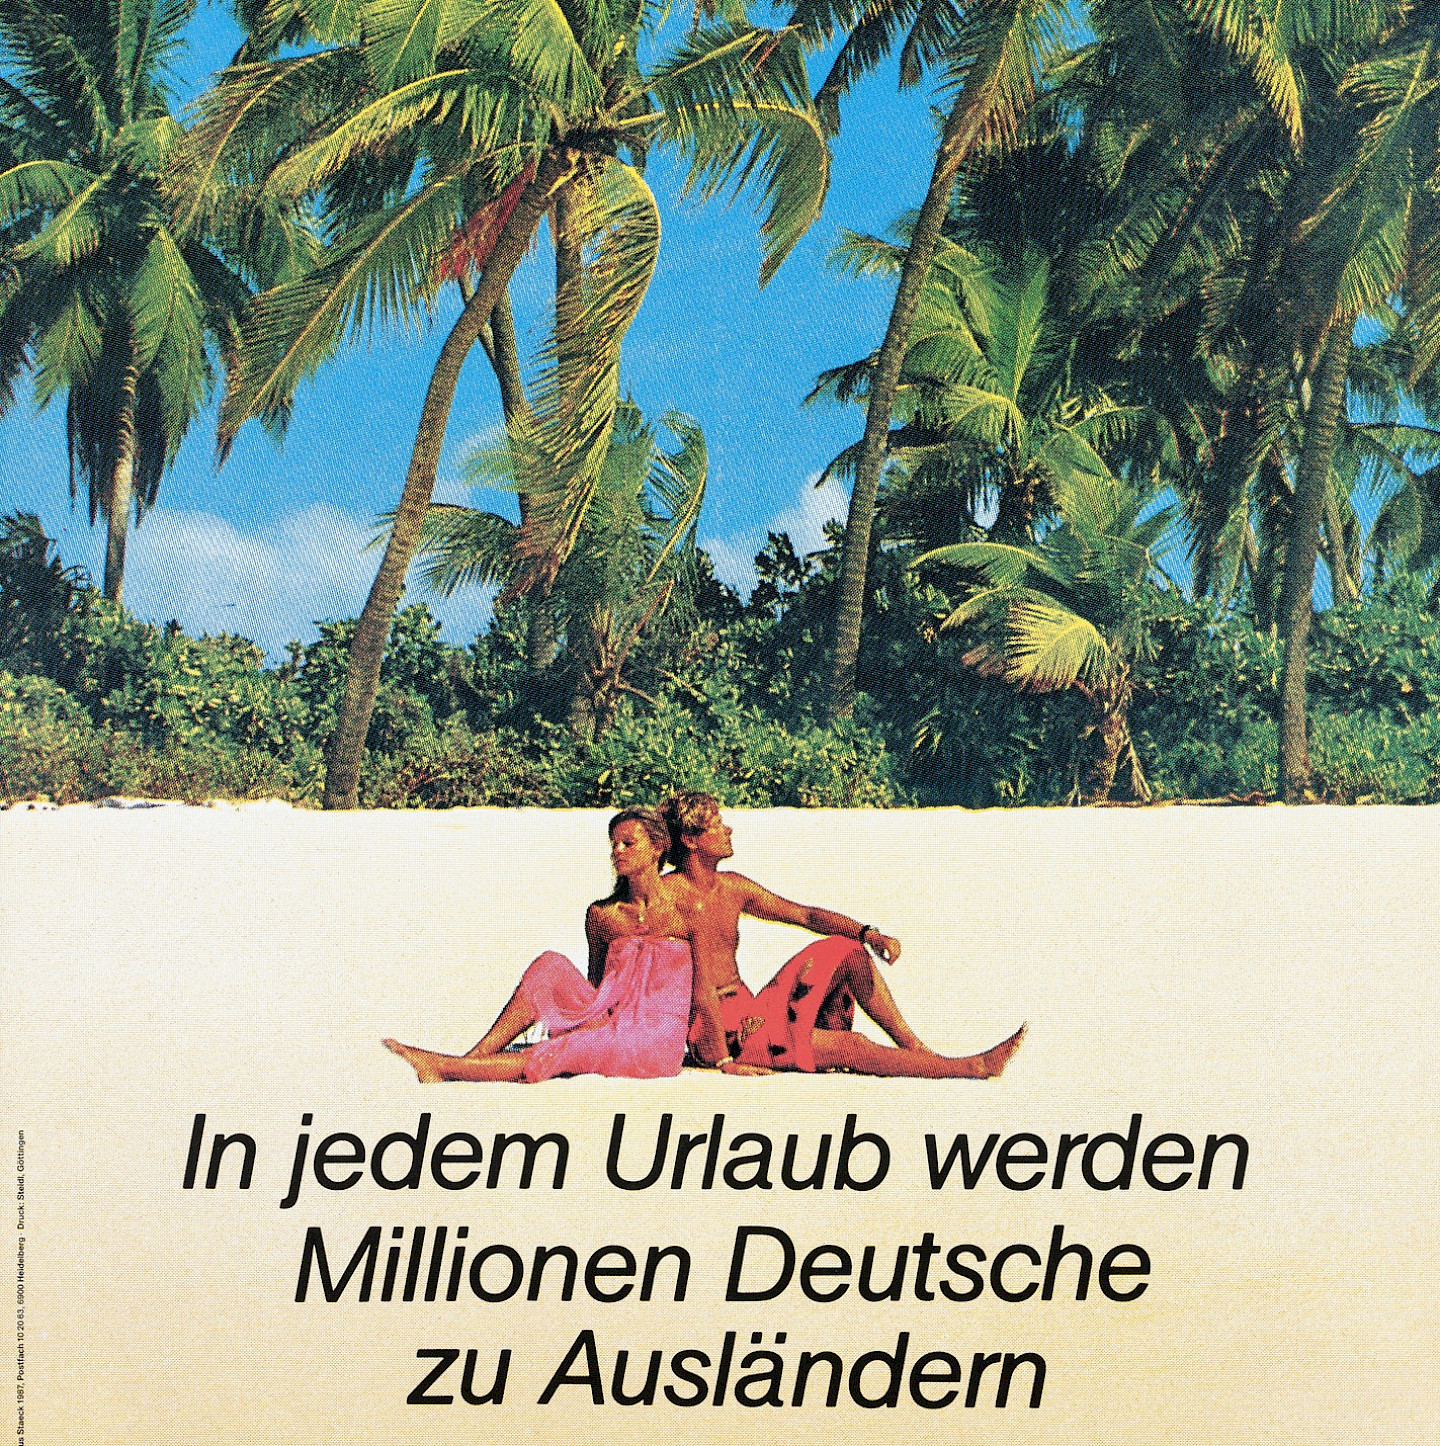 Klaus Staeck, In jedem Urlaub werden Millionen Deutsche zu Ausländern, 1987, Museum für Gestaltung Zürich, Plakatsammlung, © Klaus Staeck